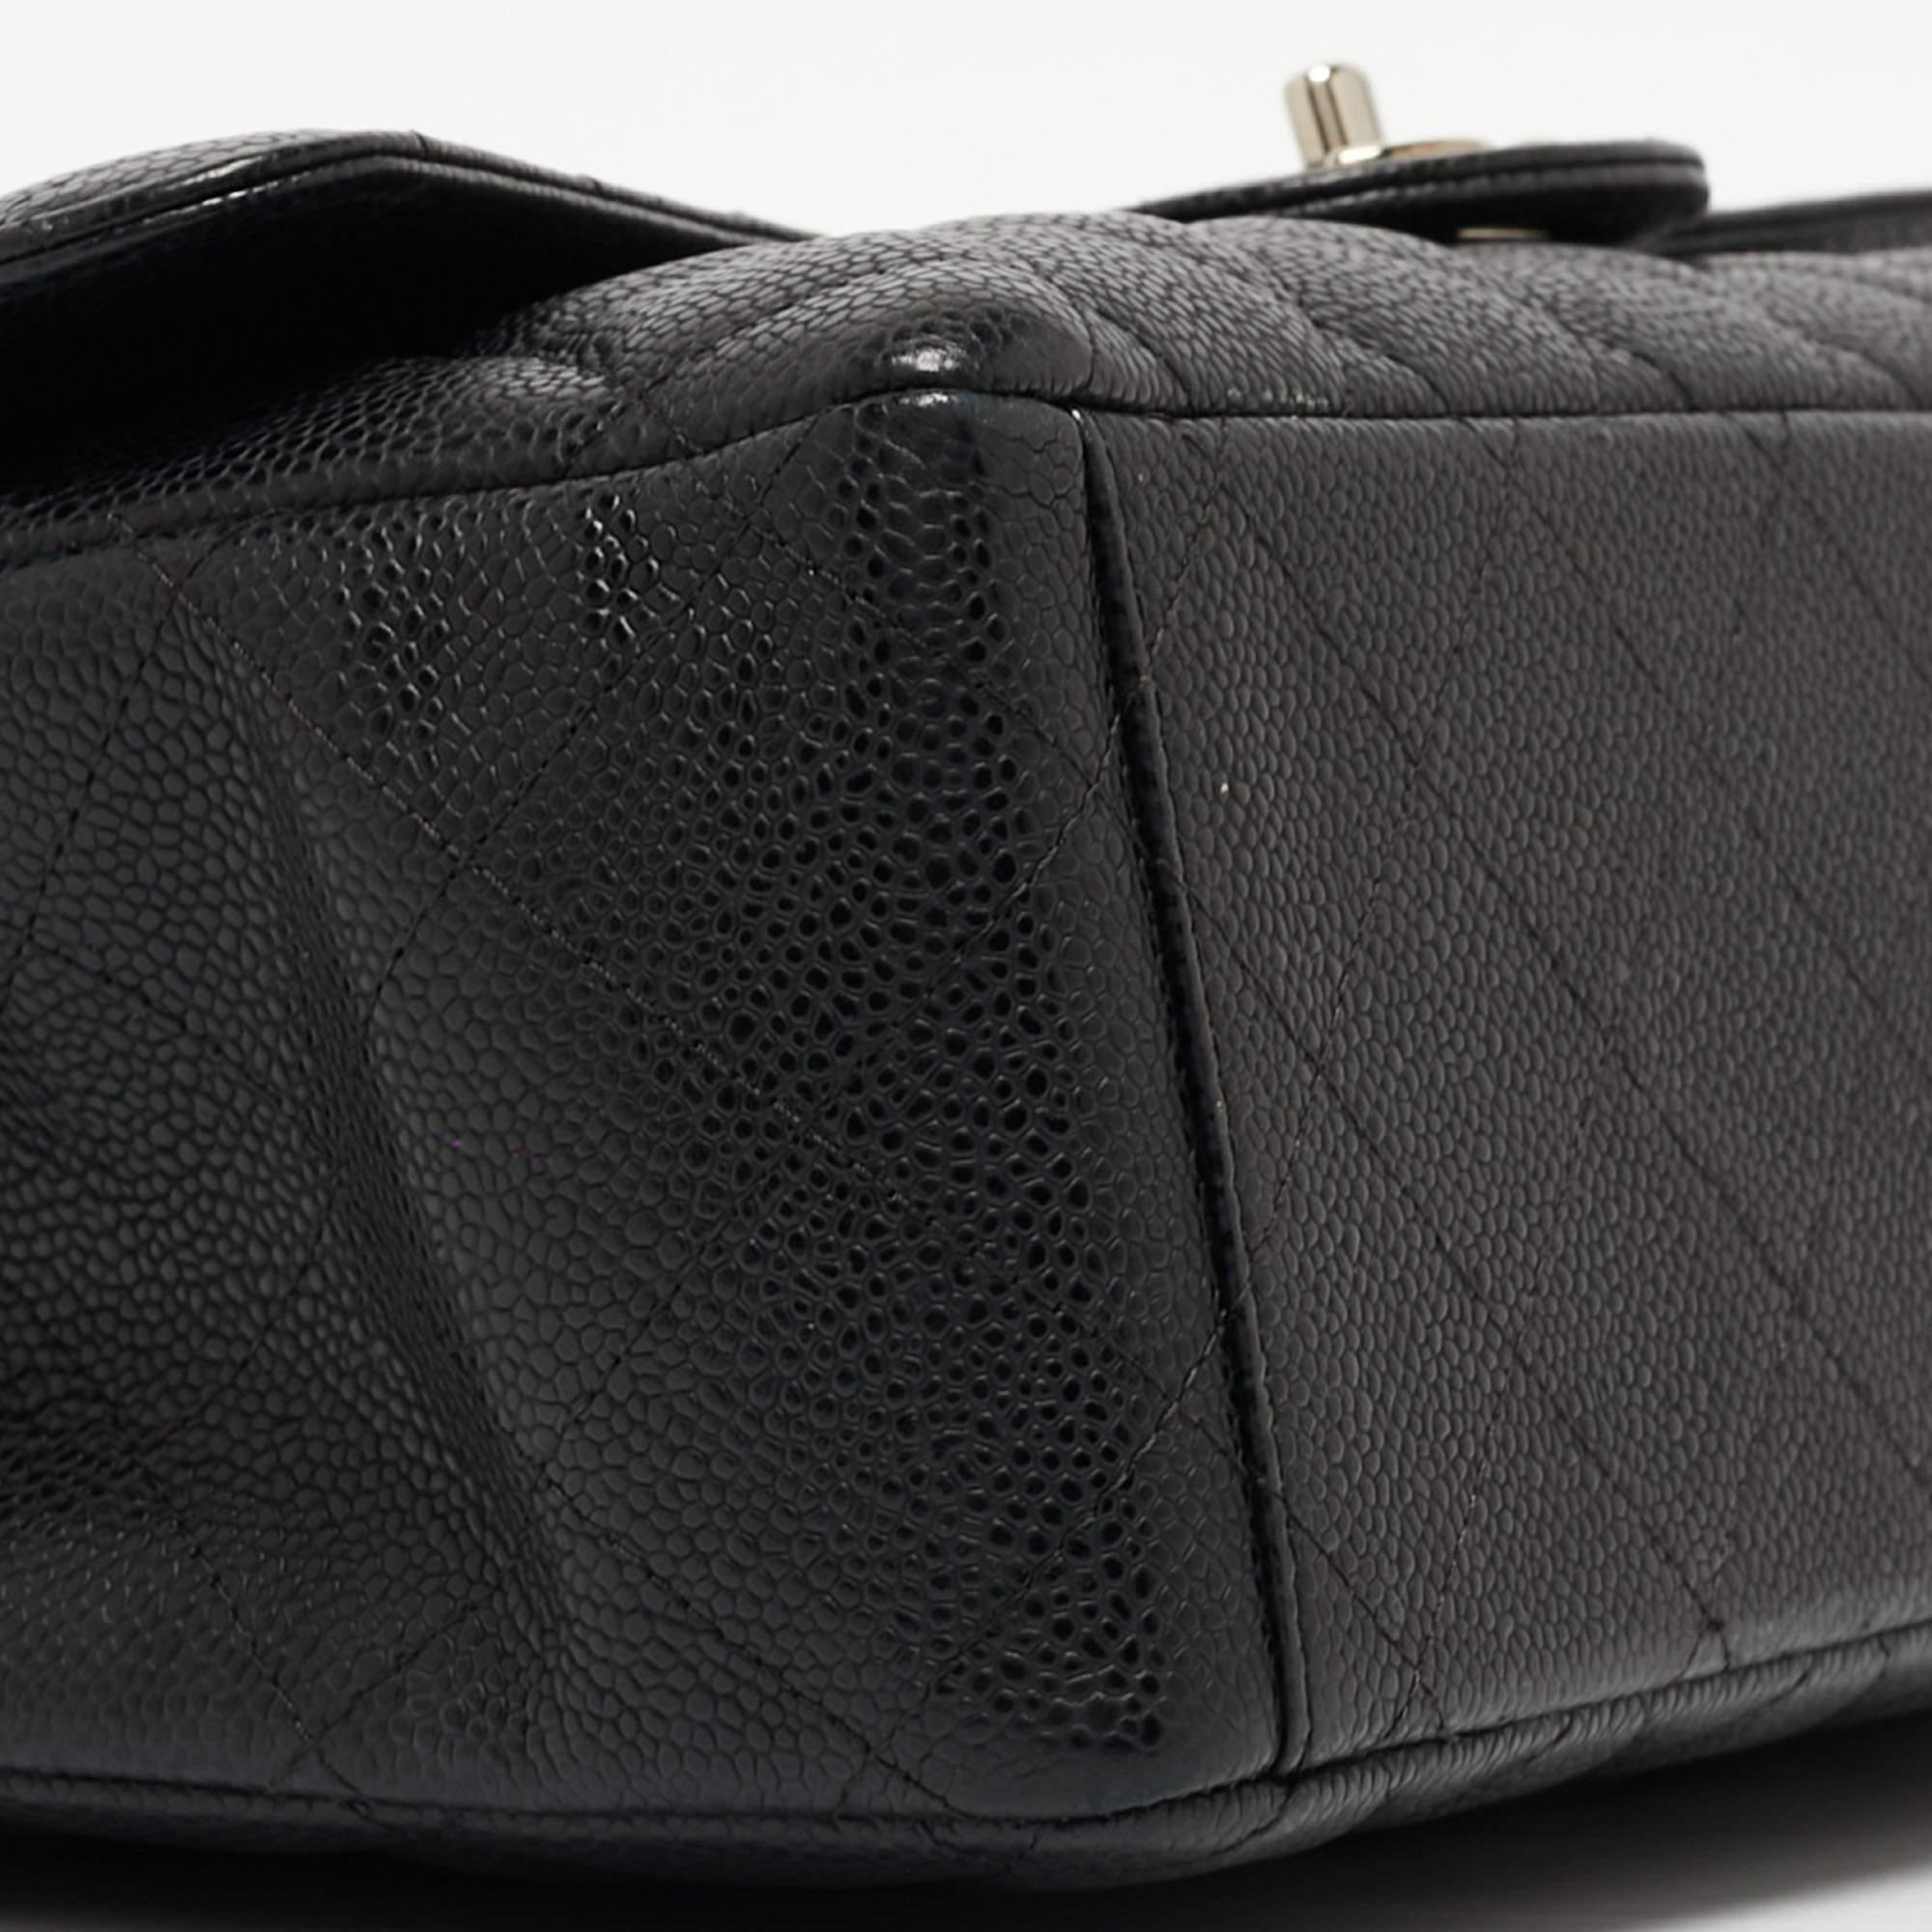 Chanel - Sac à double rabat classique Maxi en cuir texturé noir matelassé 3